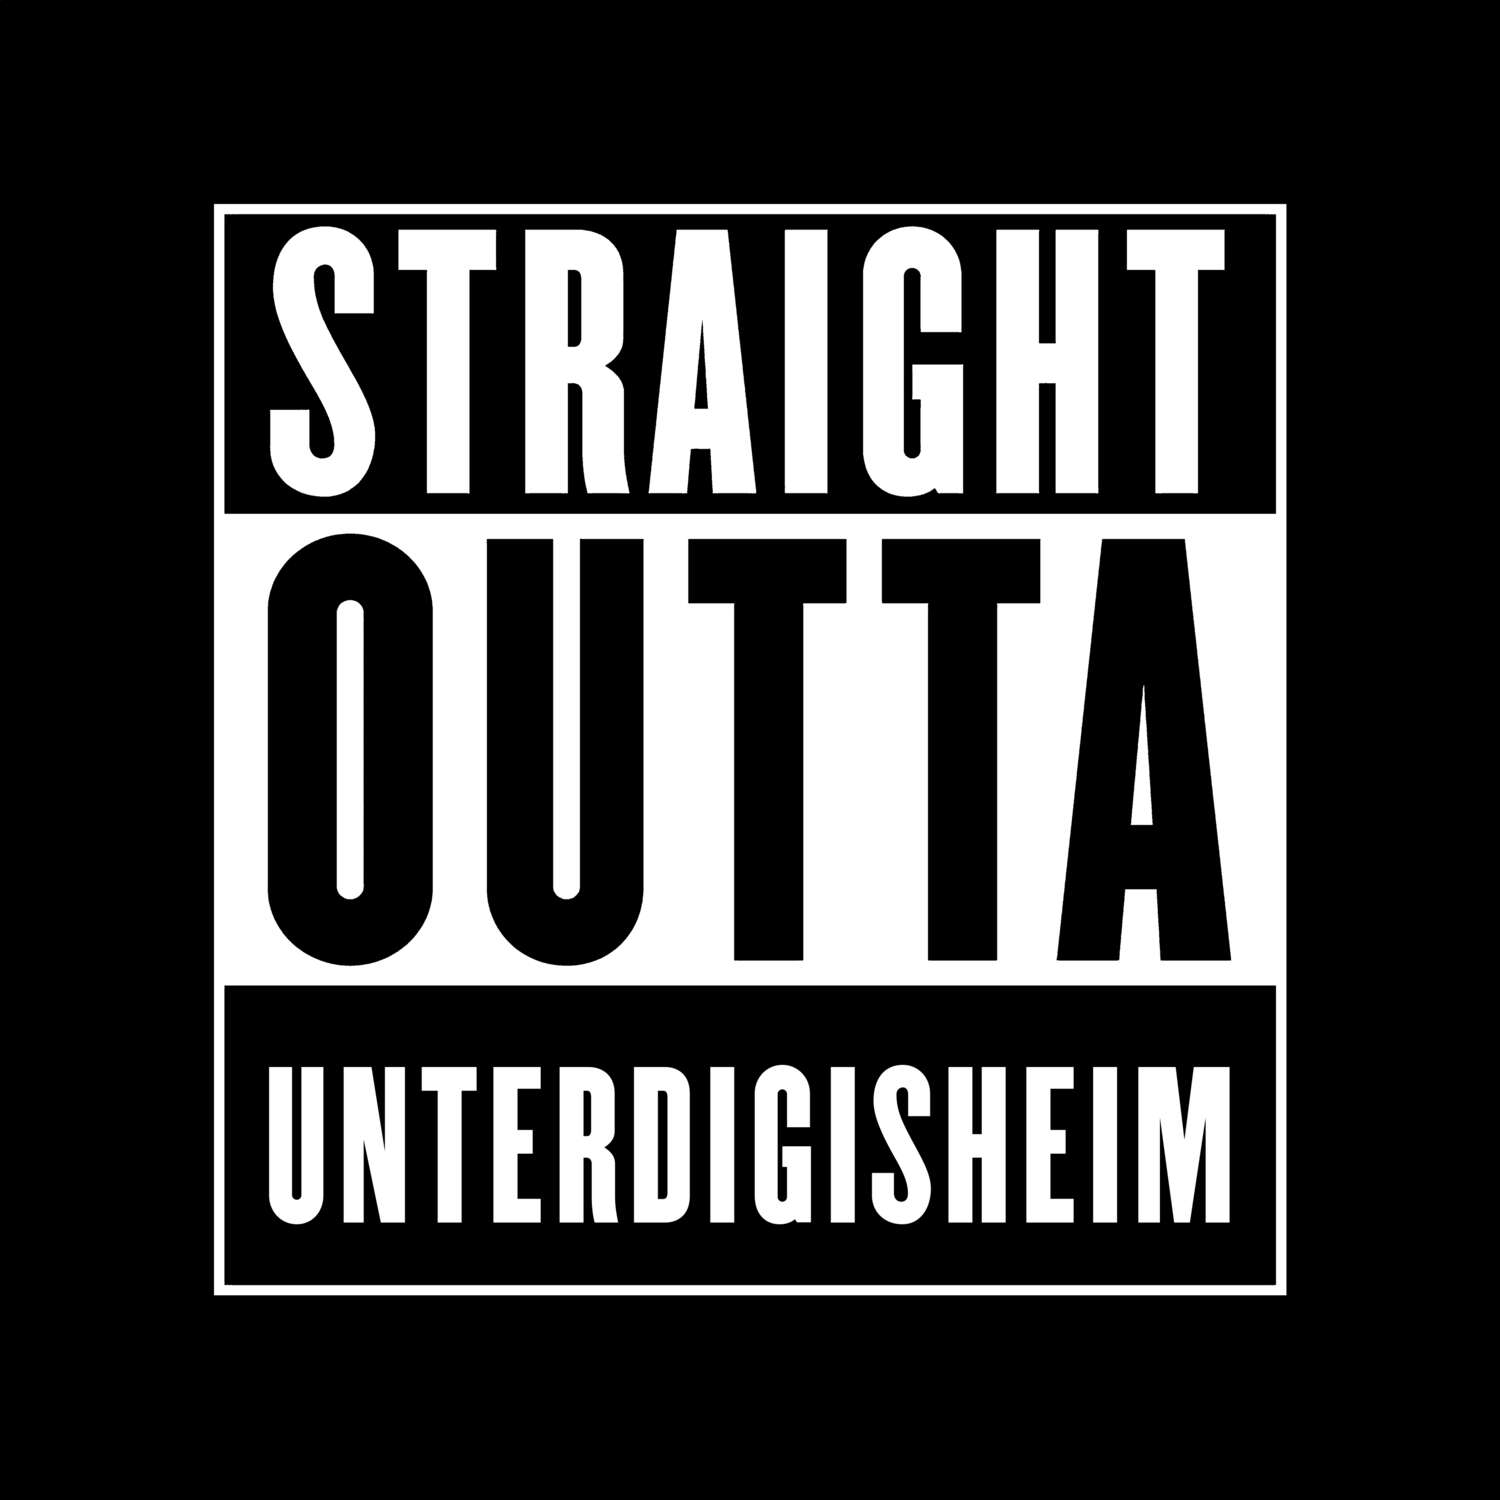 Unterdigisheim T-Shirt »Straight Outta«